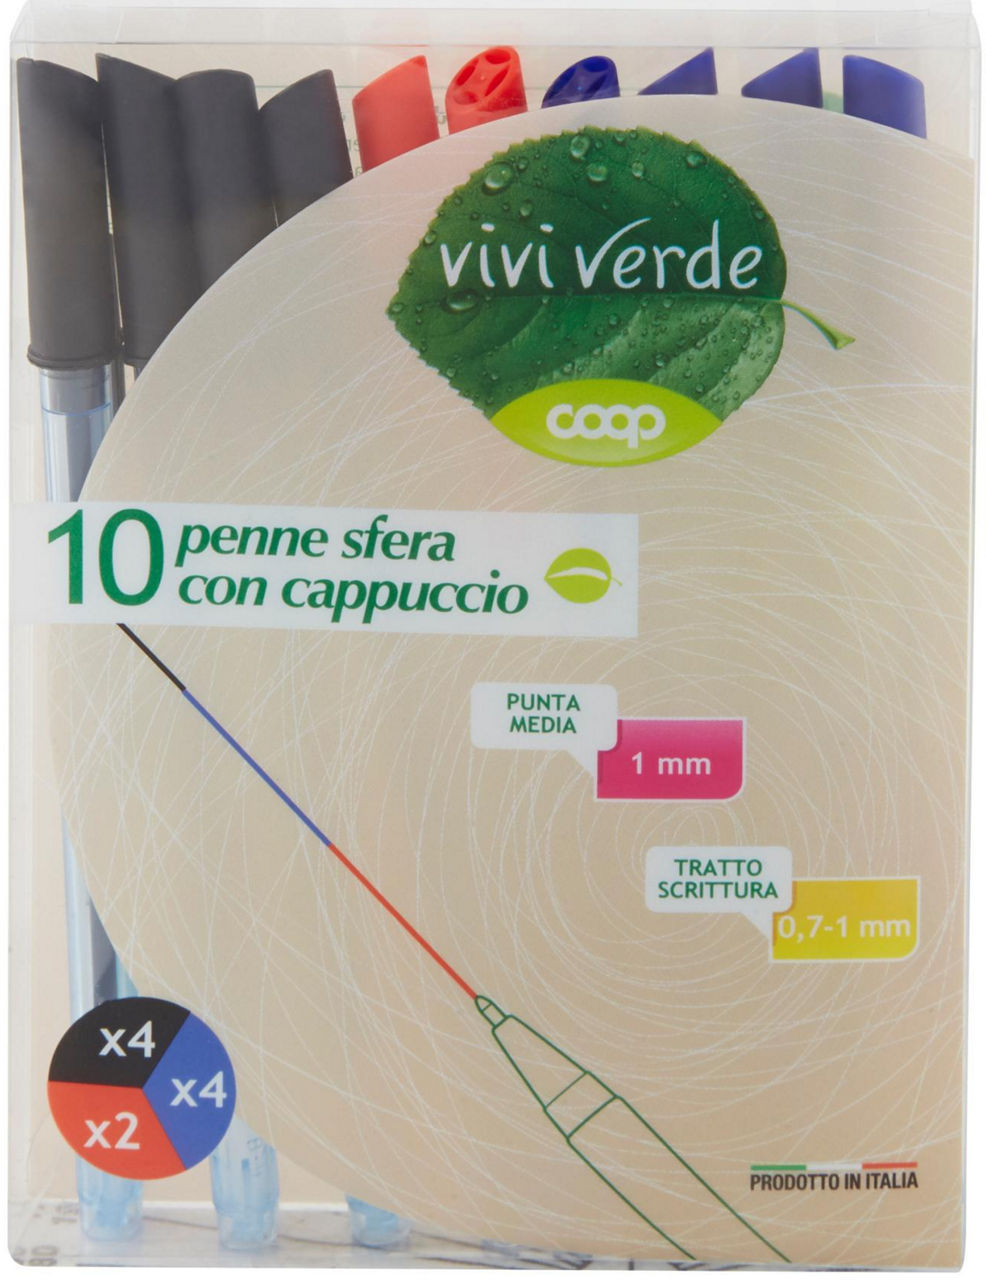 penne sfera con cappuccio 4 nere, 4 blu, 2 rosse Vivi Verde 10 pz - 0